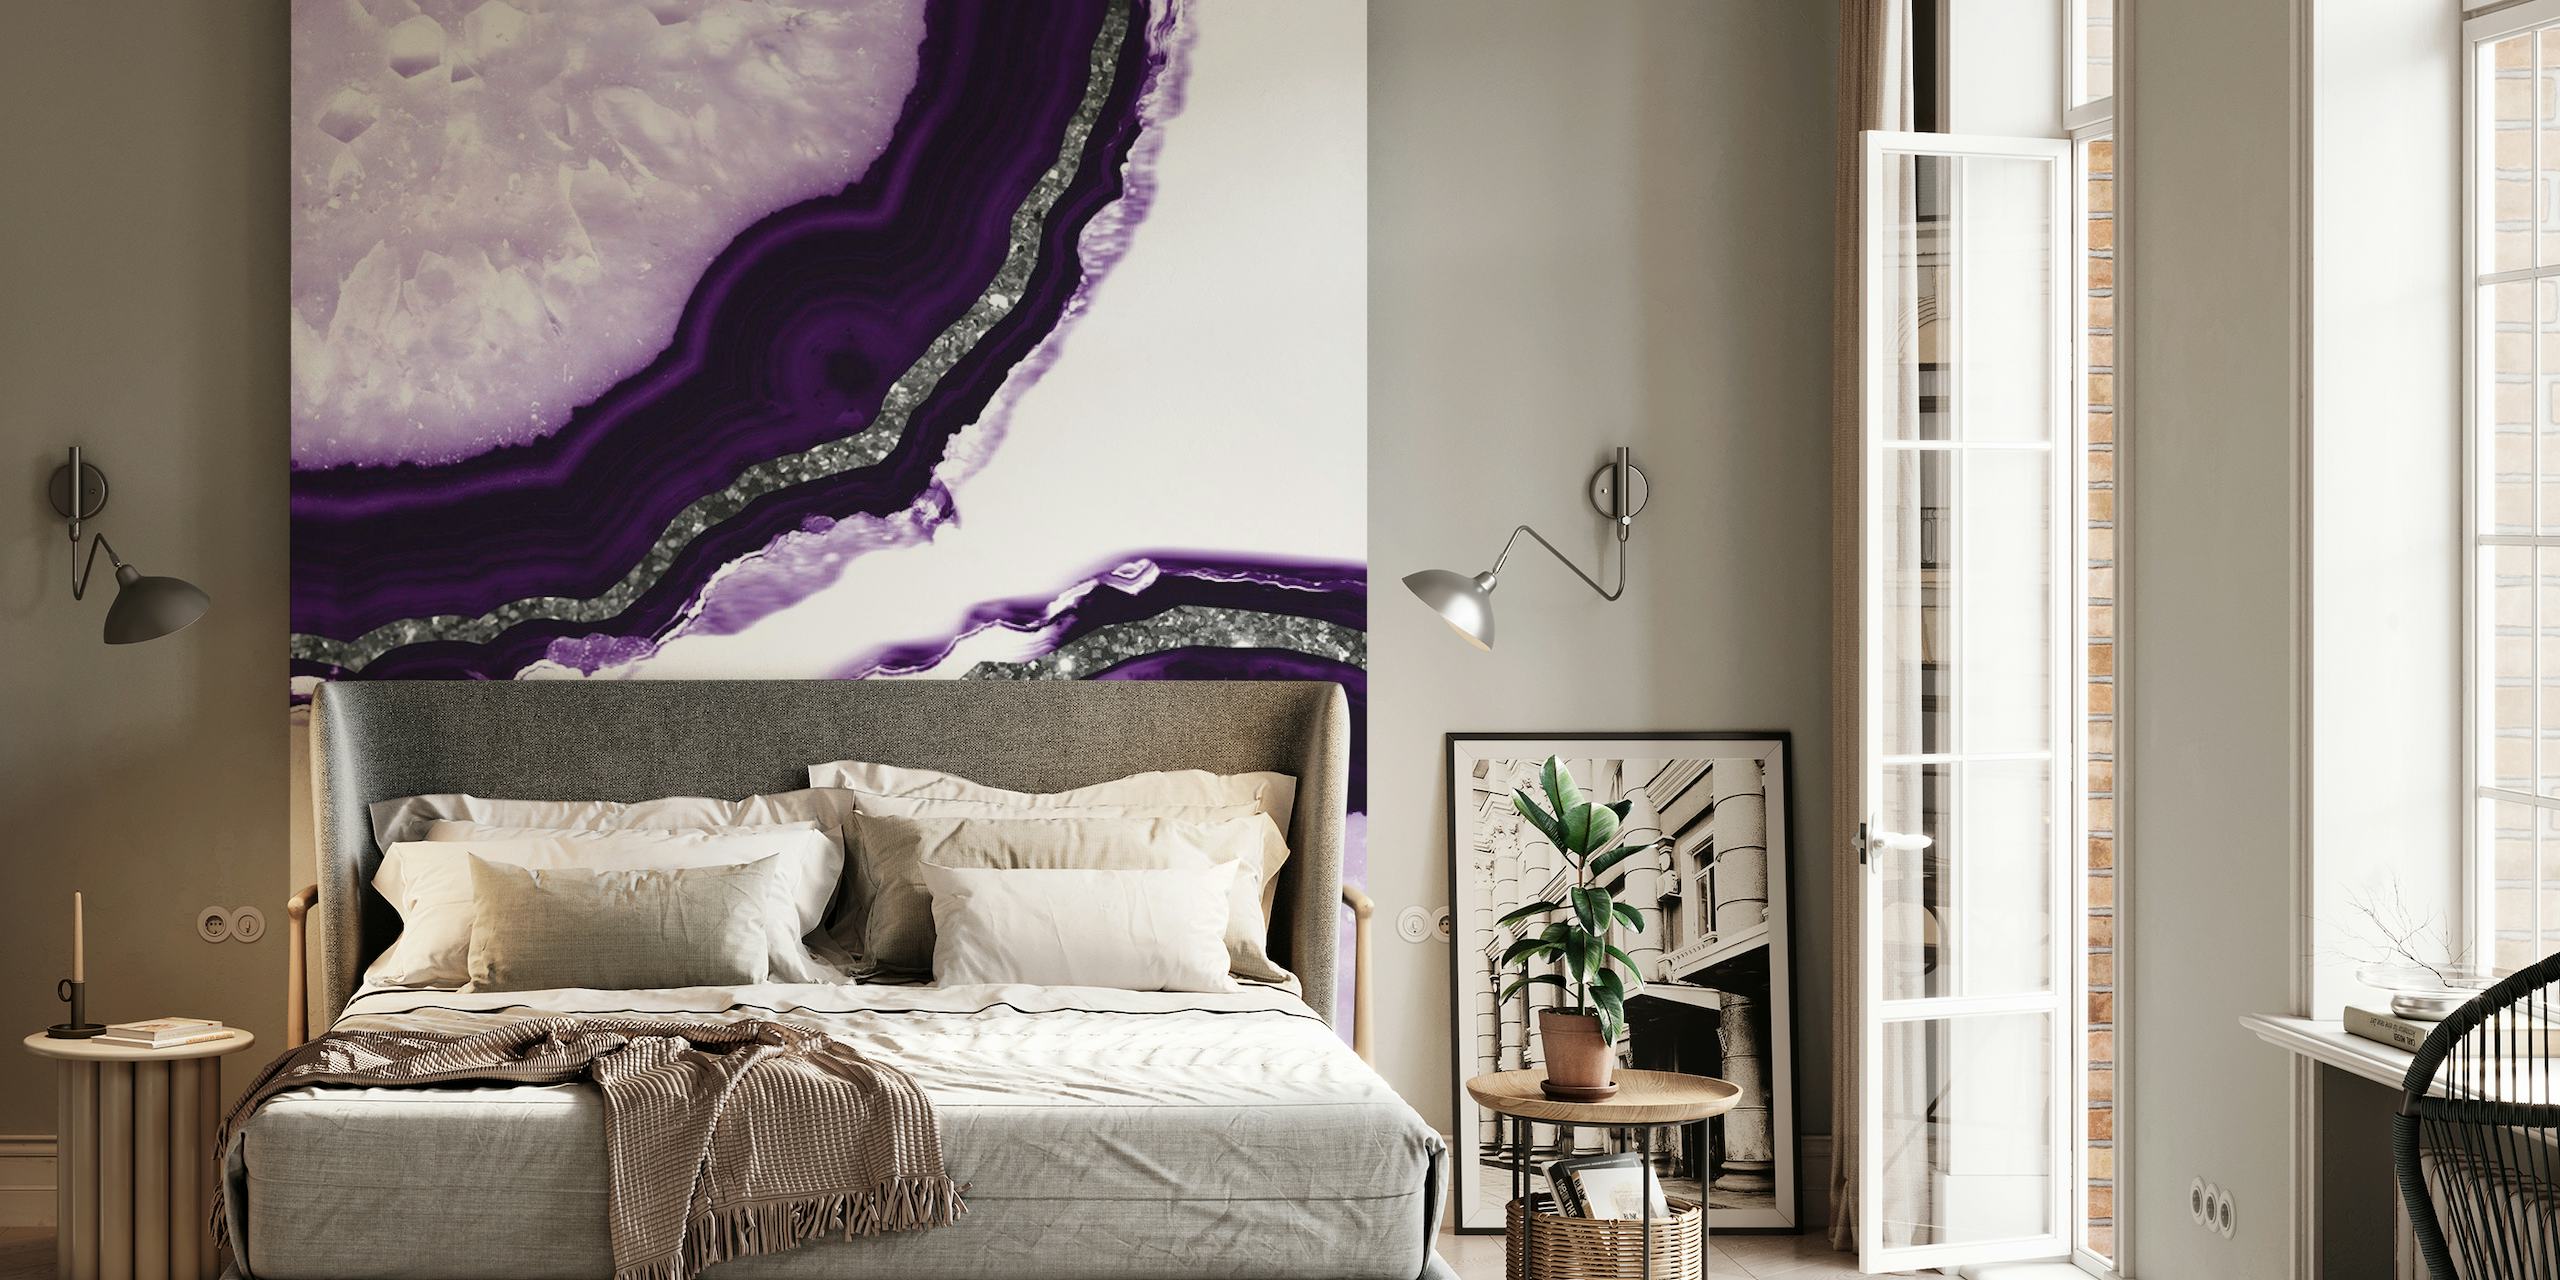 Nærbillede af Agate Glitter Glam 12a vægmaleri med lilla og hvide agatmønstre med glitterdetaljer.